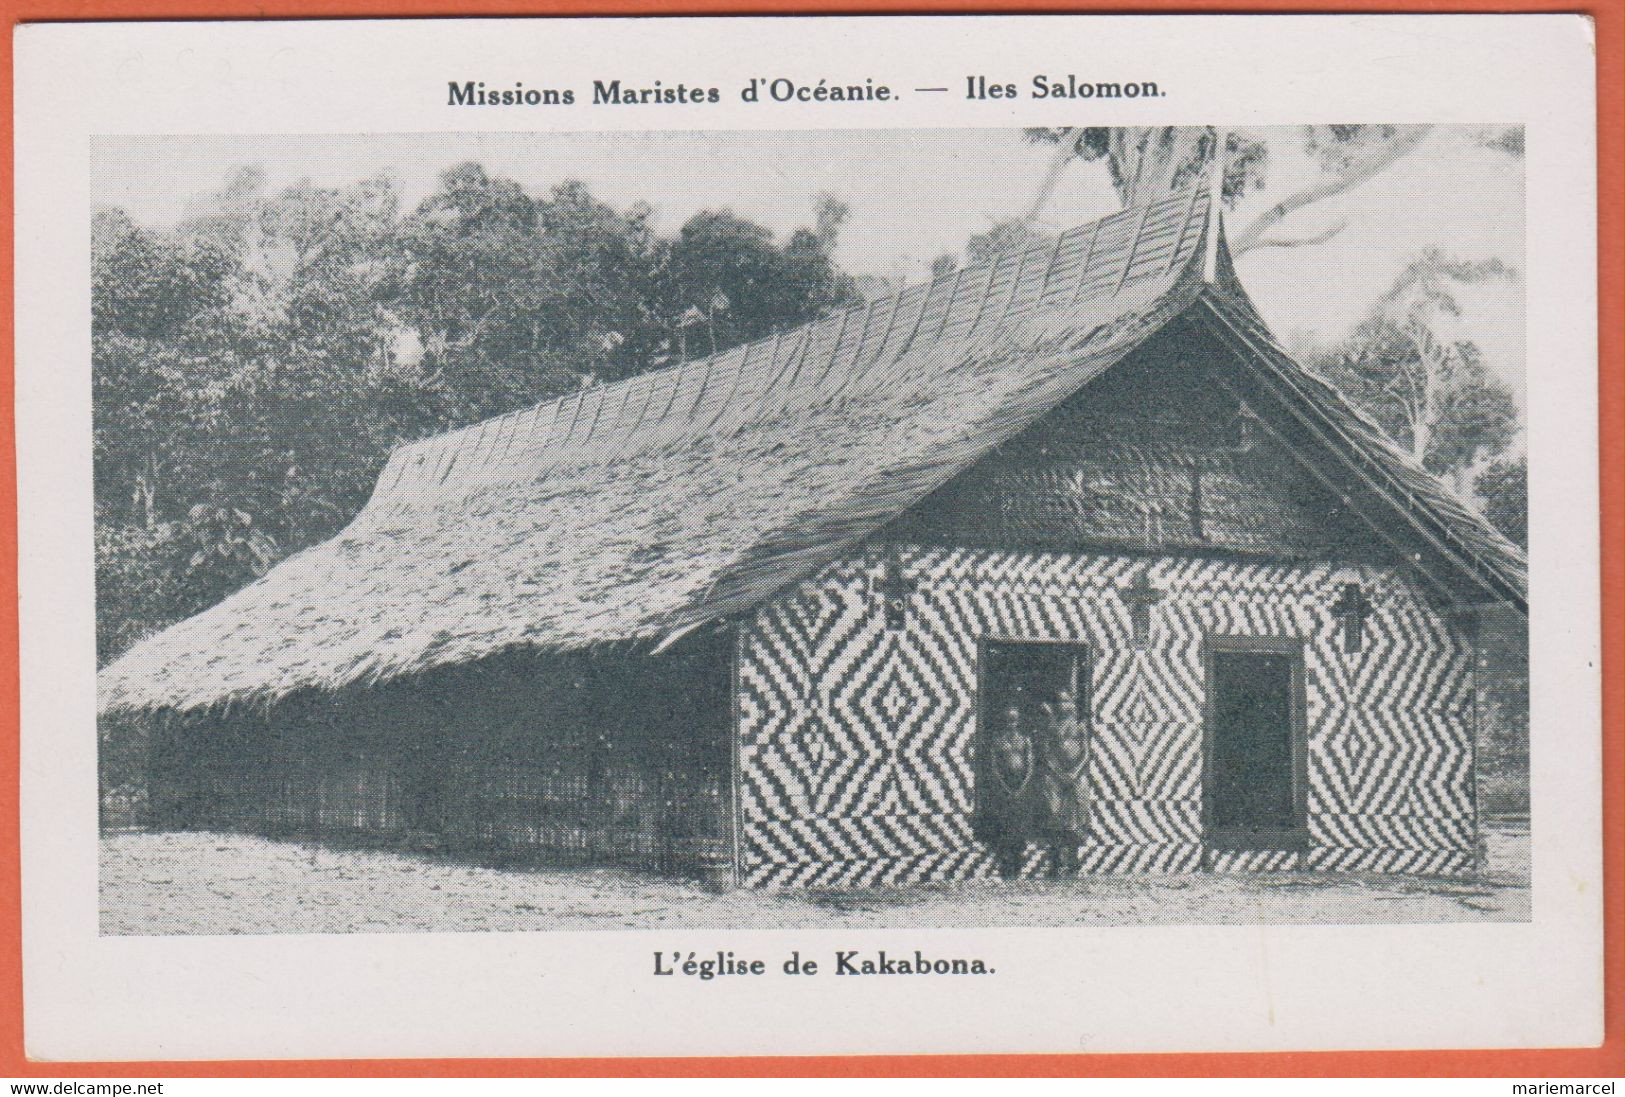 ILES SALOMON - L'ÉGLISE DE KAKABONA - MISSIONS MARISTES D'OCÉANIE - 2 Personnes Nues Devant L'entrée - Solomoneilanden